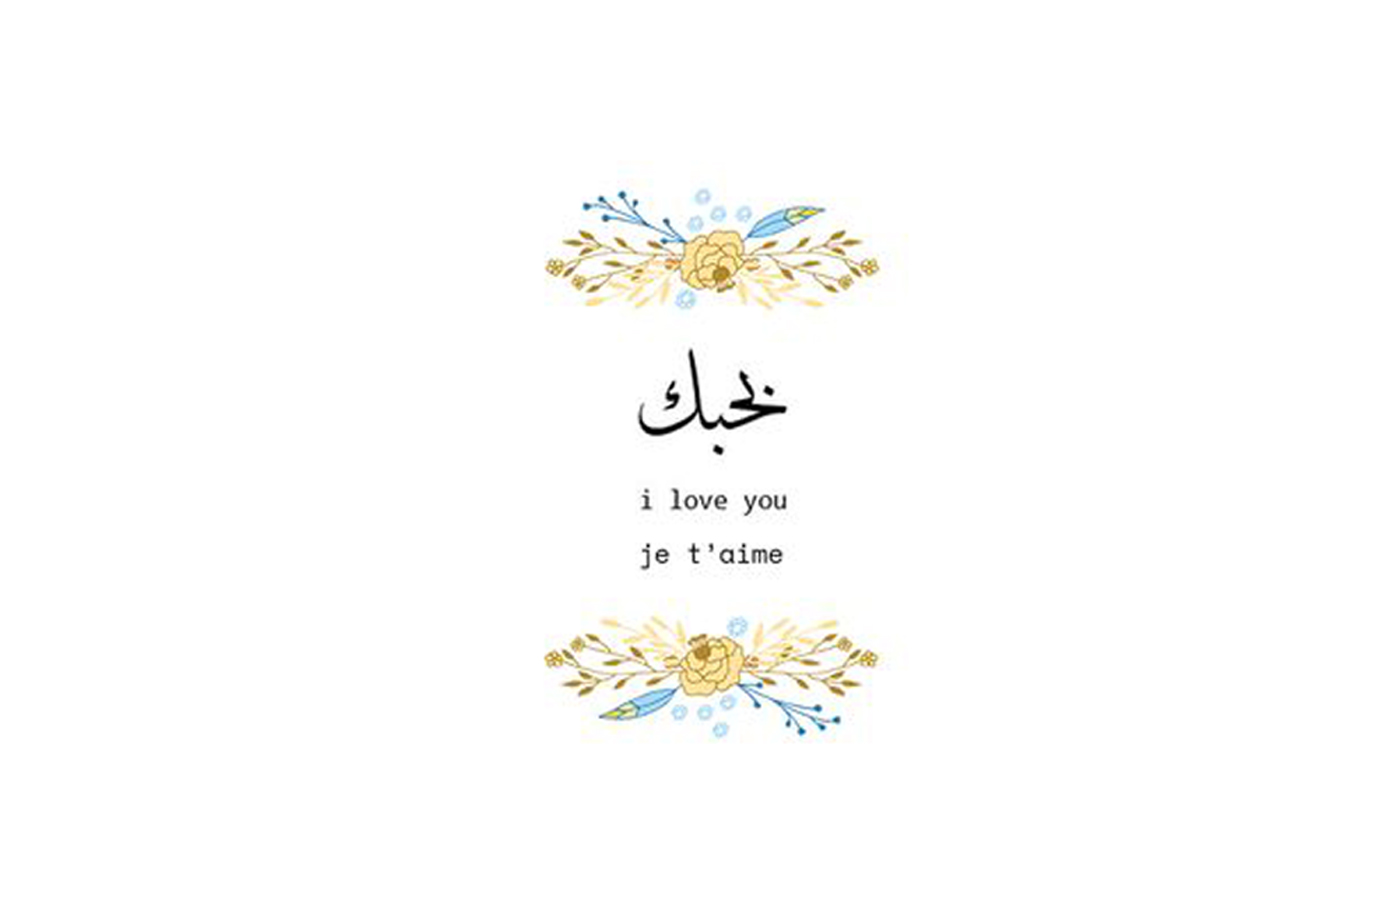 शीर्ष: अरबी में आई लव यू कहने के १० खूबसूरत तरीके